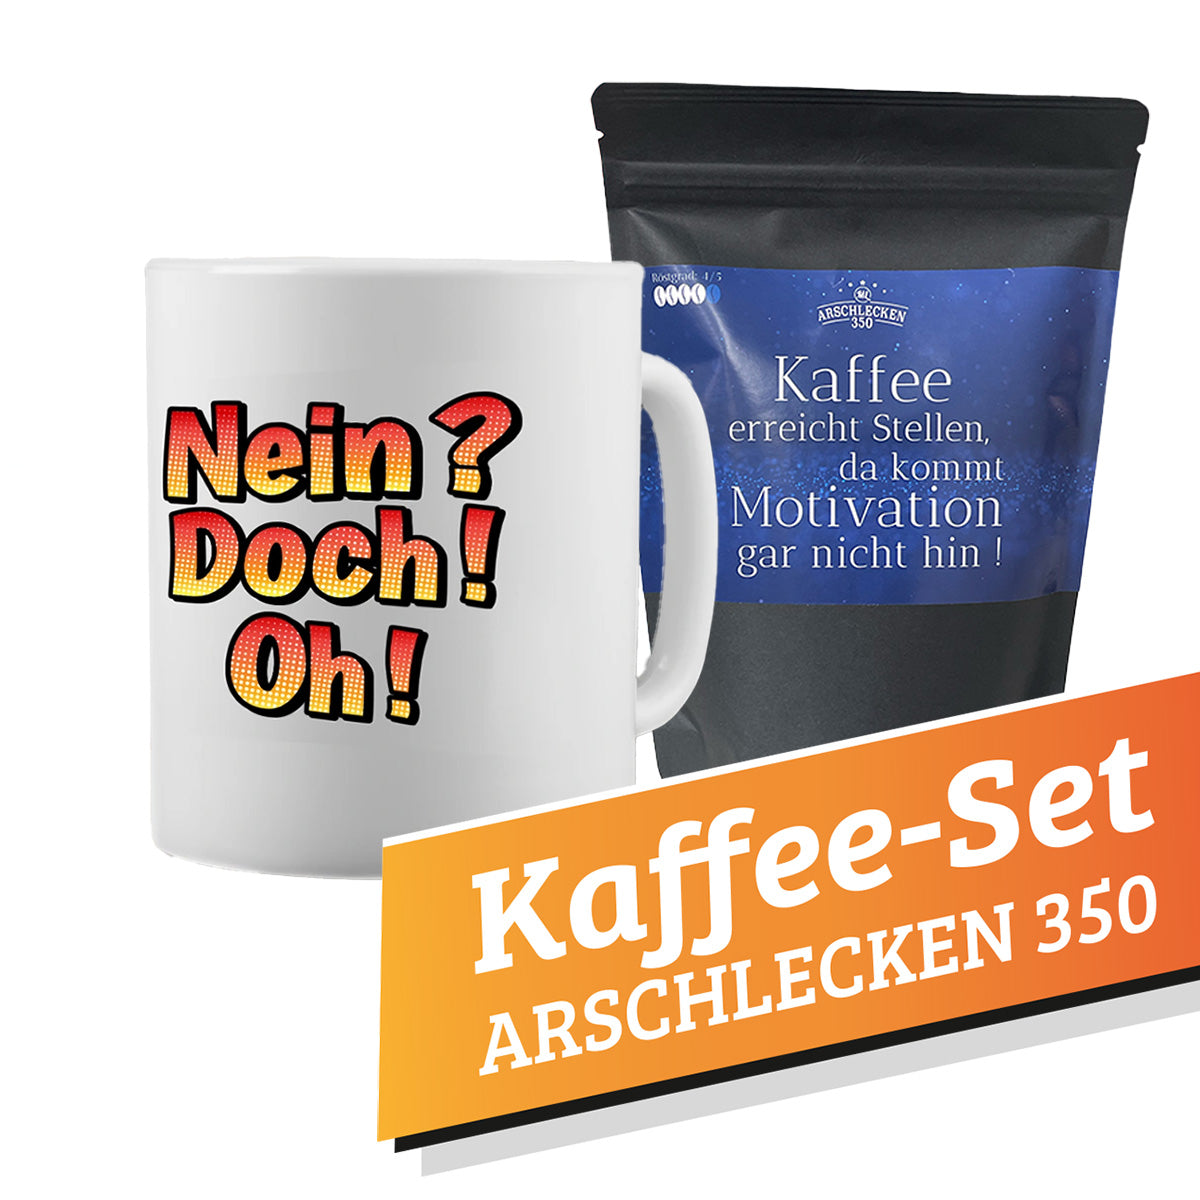 Kaffee-Set Arschlecken350 1x Tasse Nei doch oh +  1 Packung Arschlecken350 Kaffee